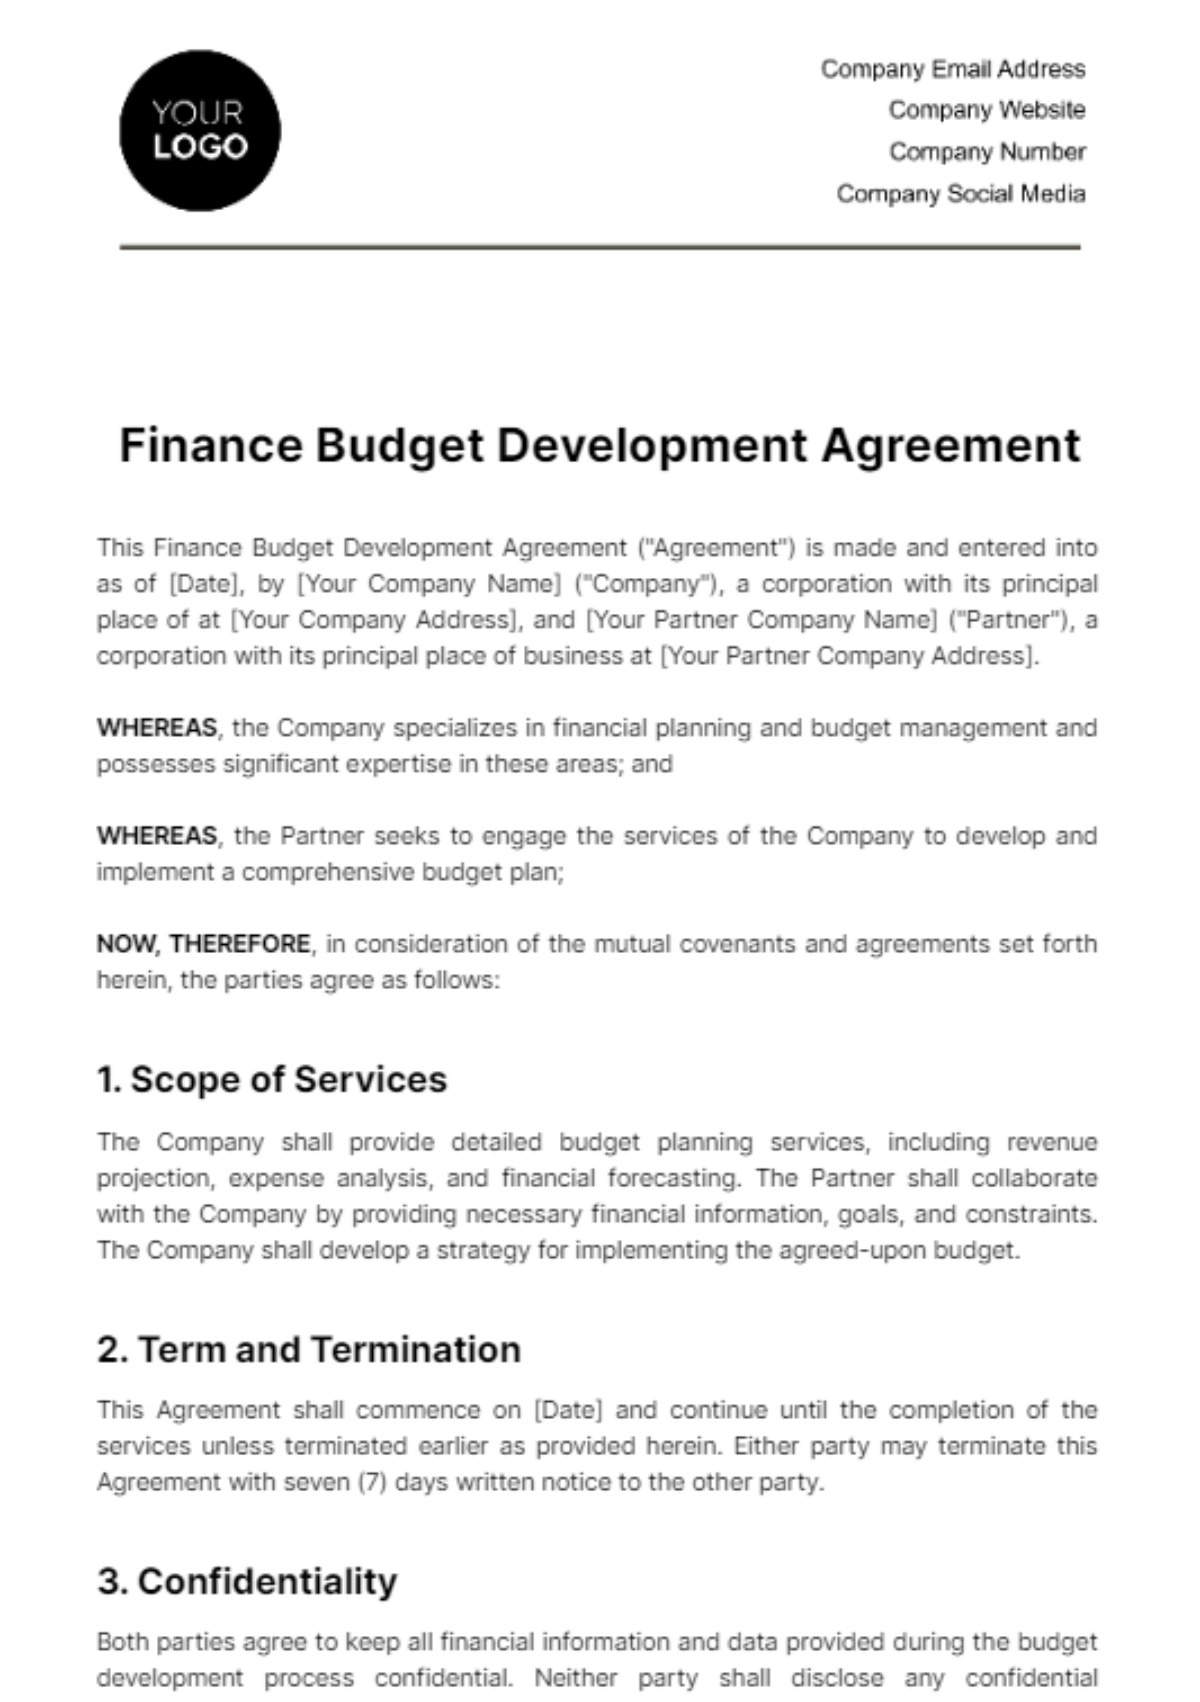 Free Finance Budget Development Agreement Template